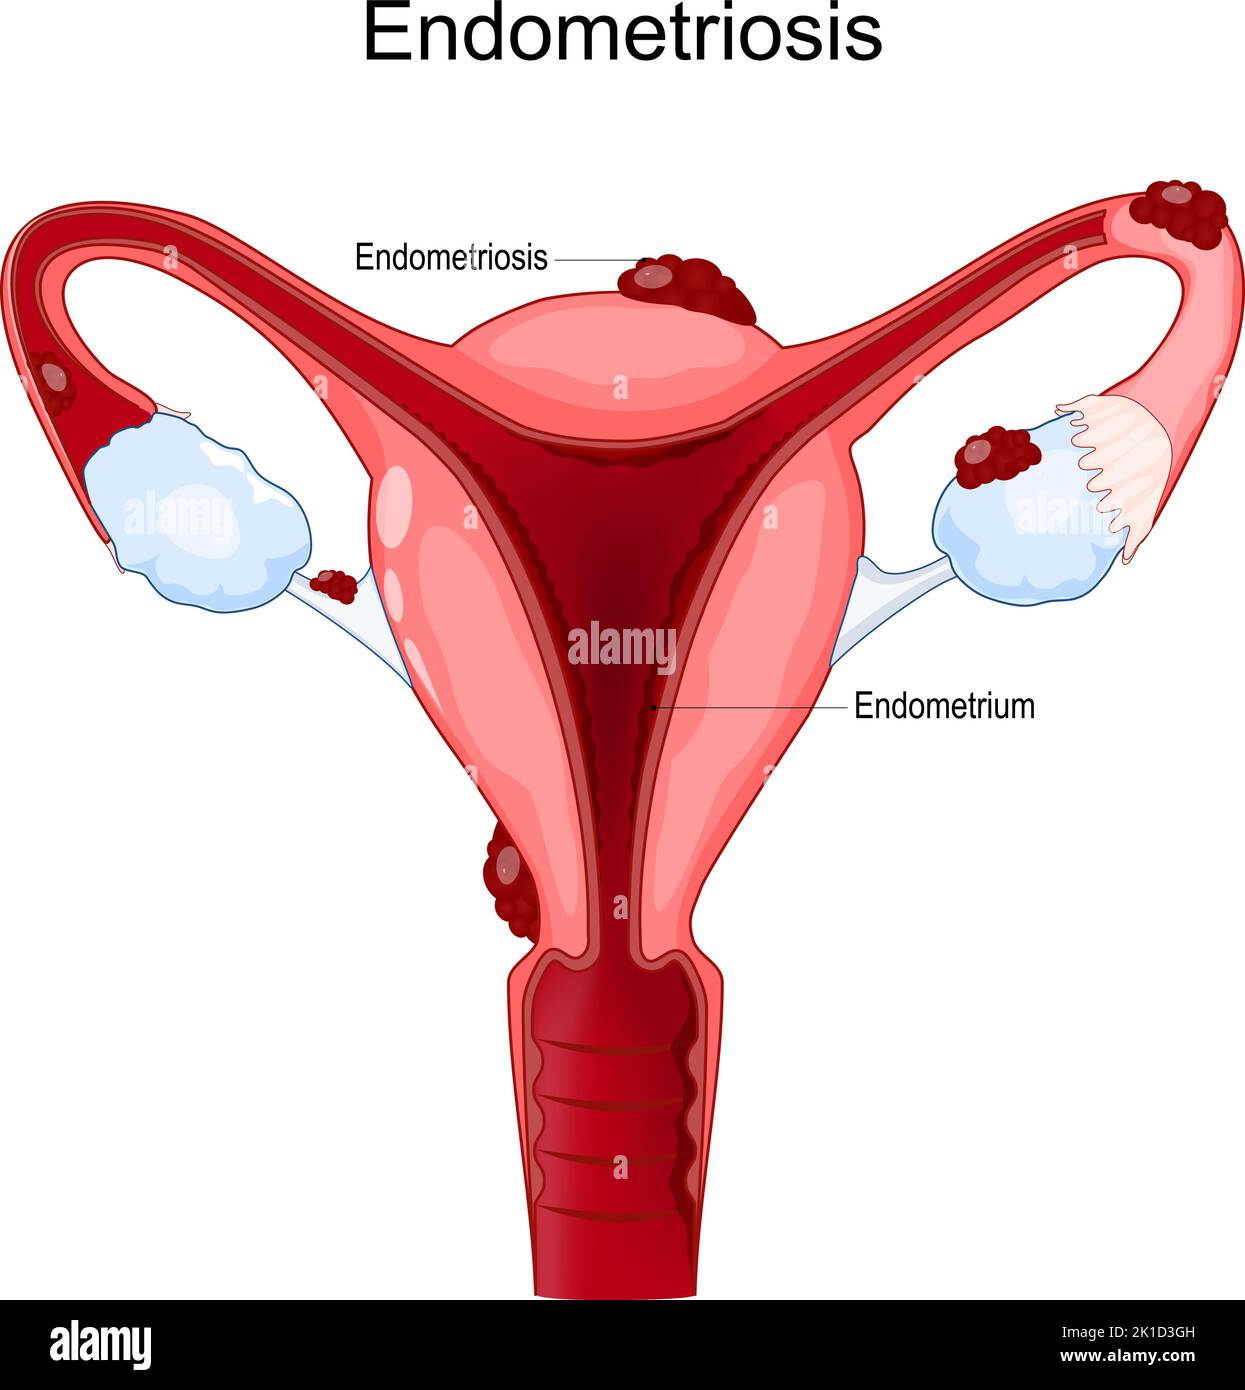 Endometriosis. Sistema reproductor femenino. Útero humano con células endometrio que crecen fuera del útero. Enfermedades femeninas. Póster de vectores Ilustración del Vector